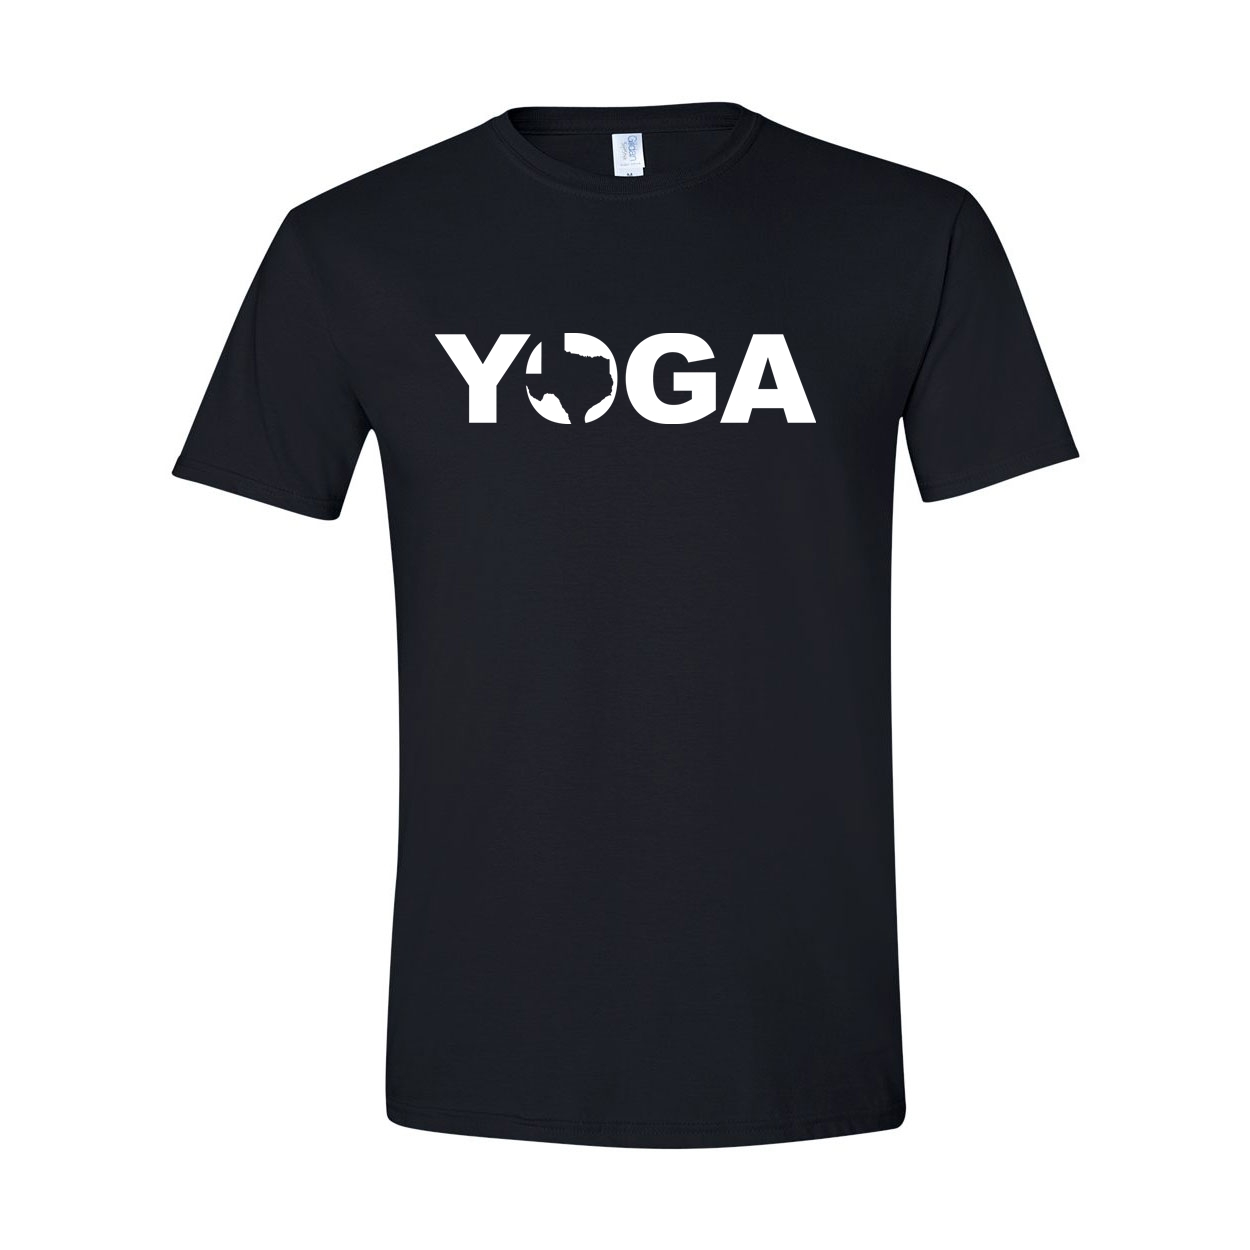 Yoga Texas Classic T-Shirt Black (White Logo)